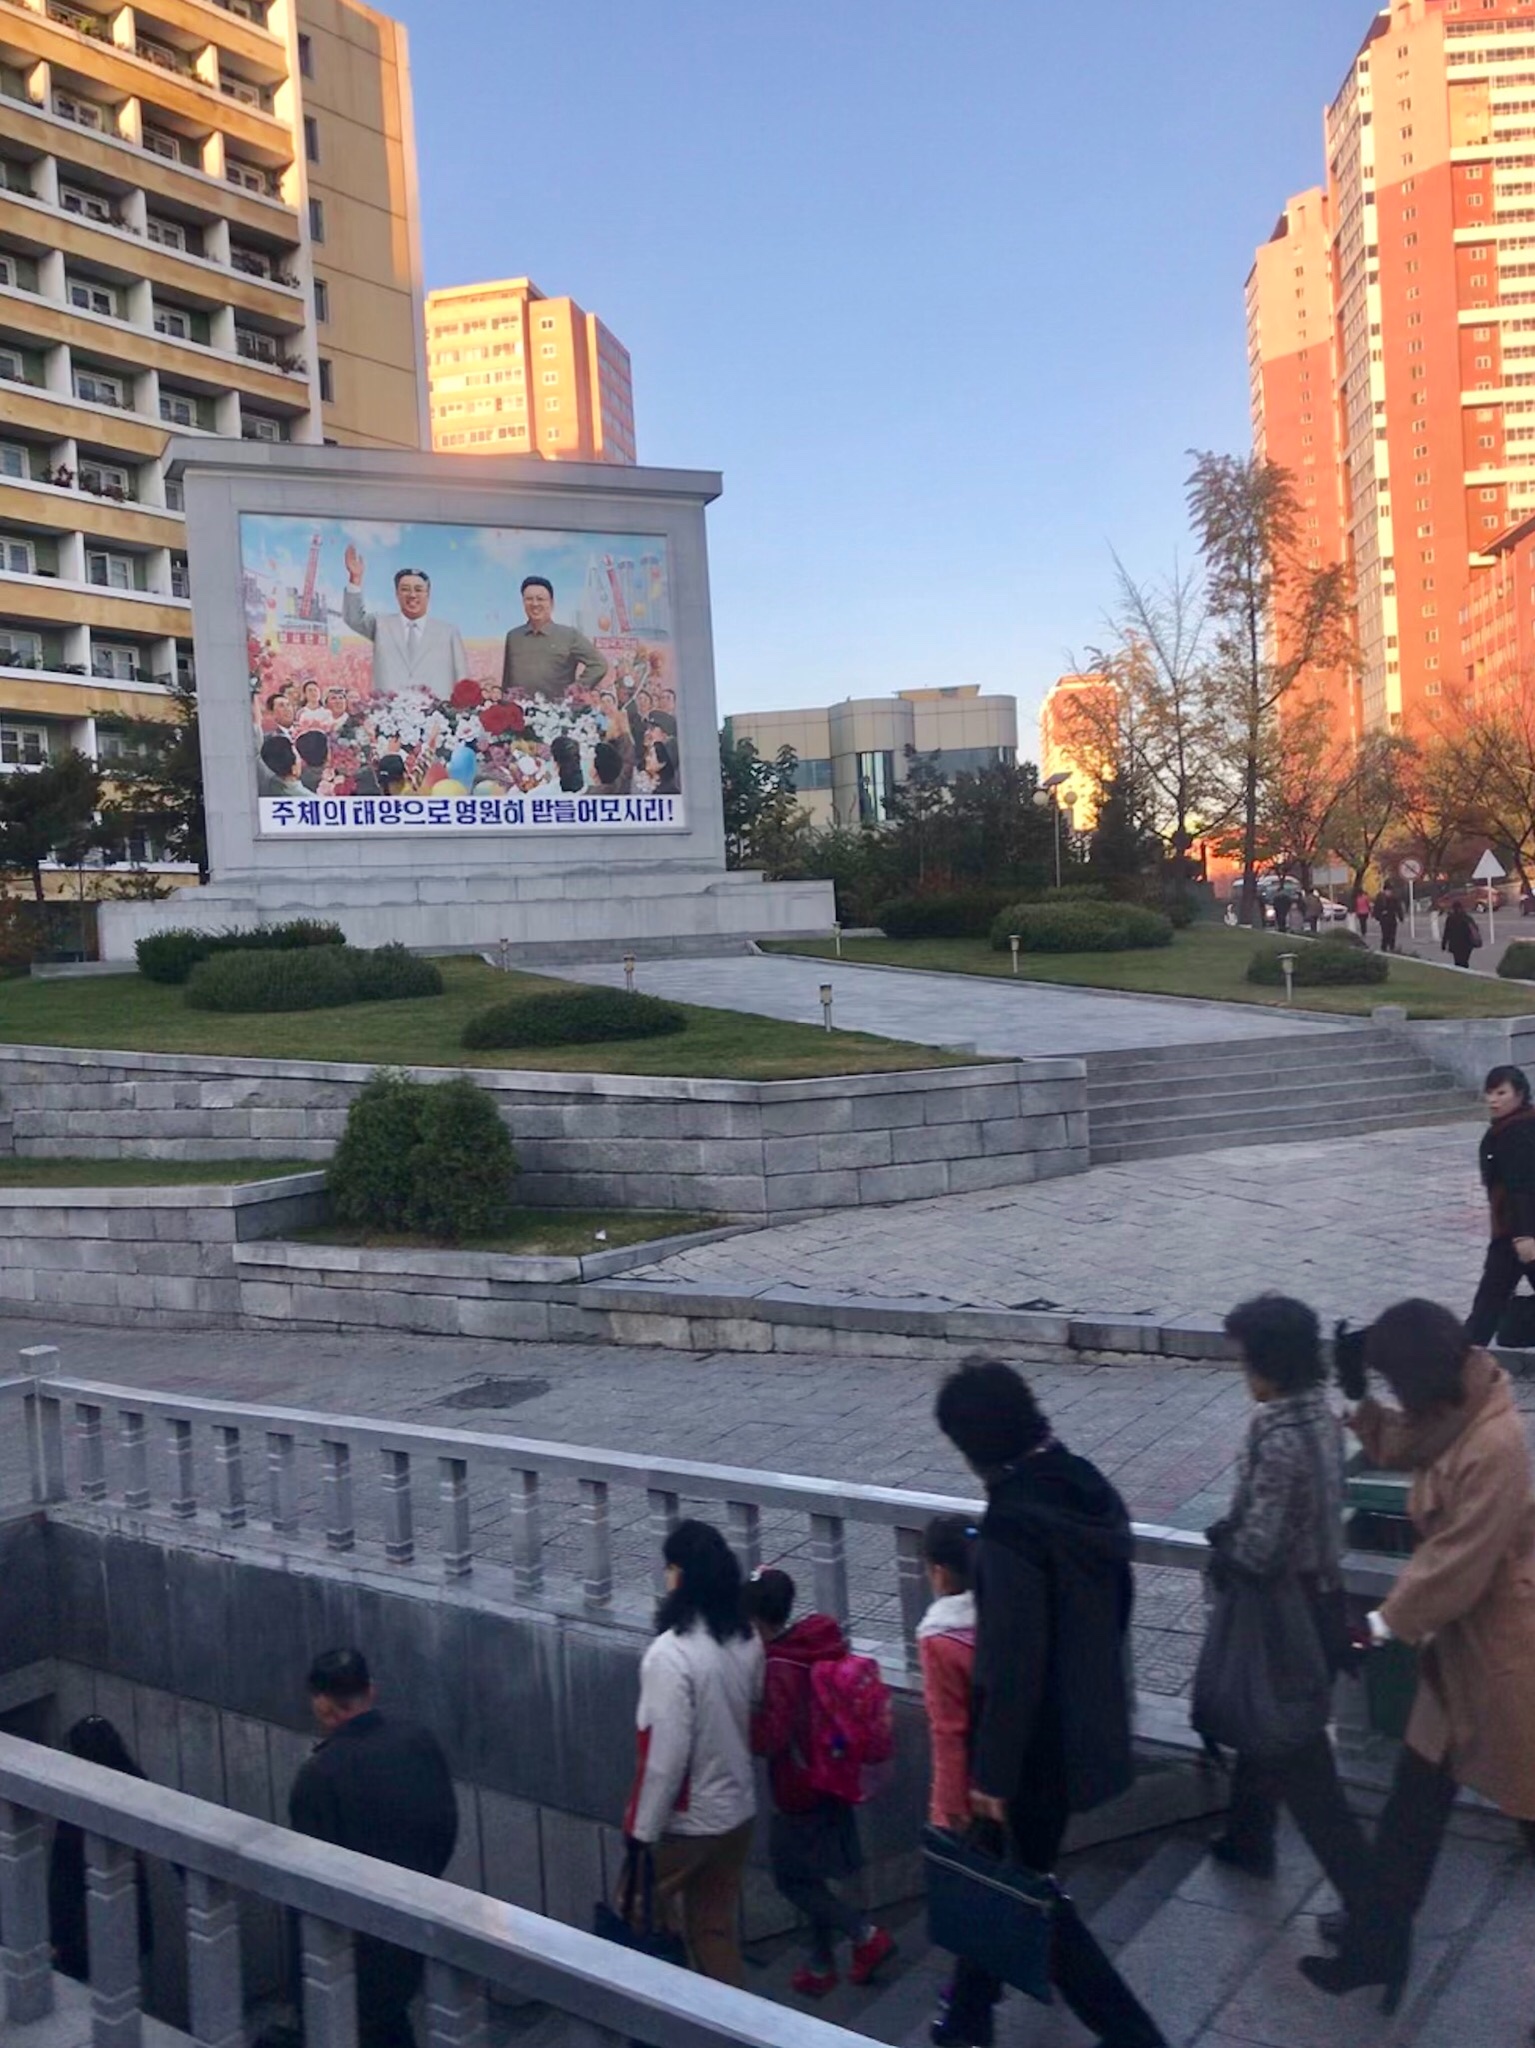 朝鲜视觉:游客镜头下的朝鲜服装店和街景!